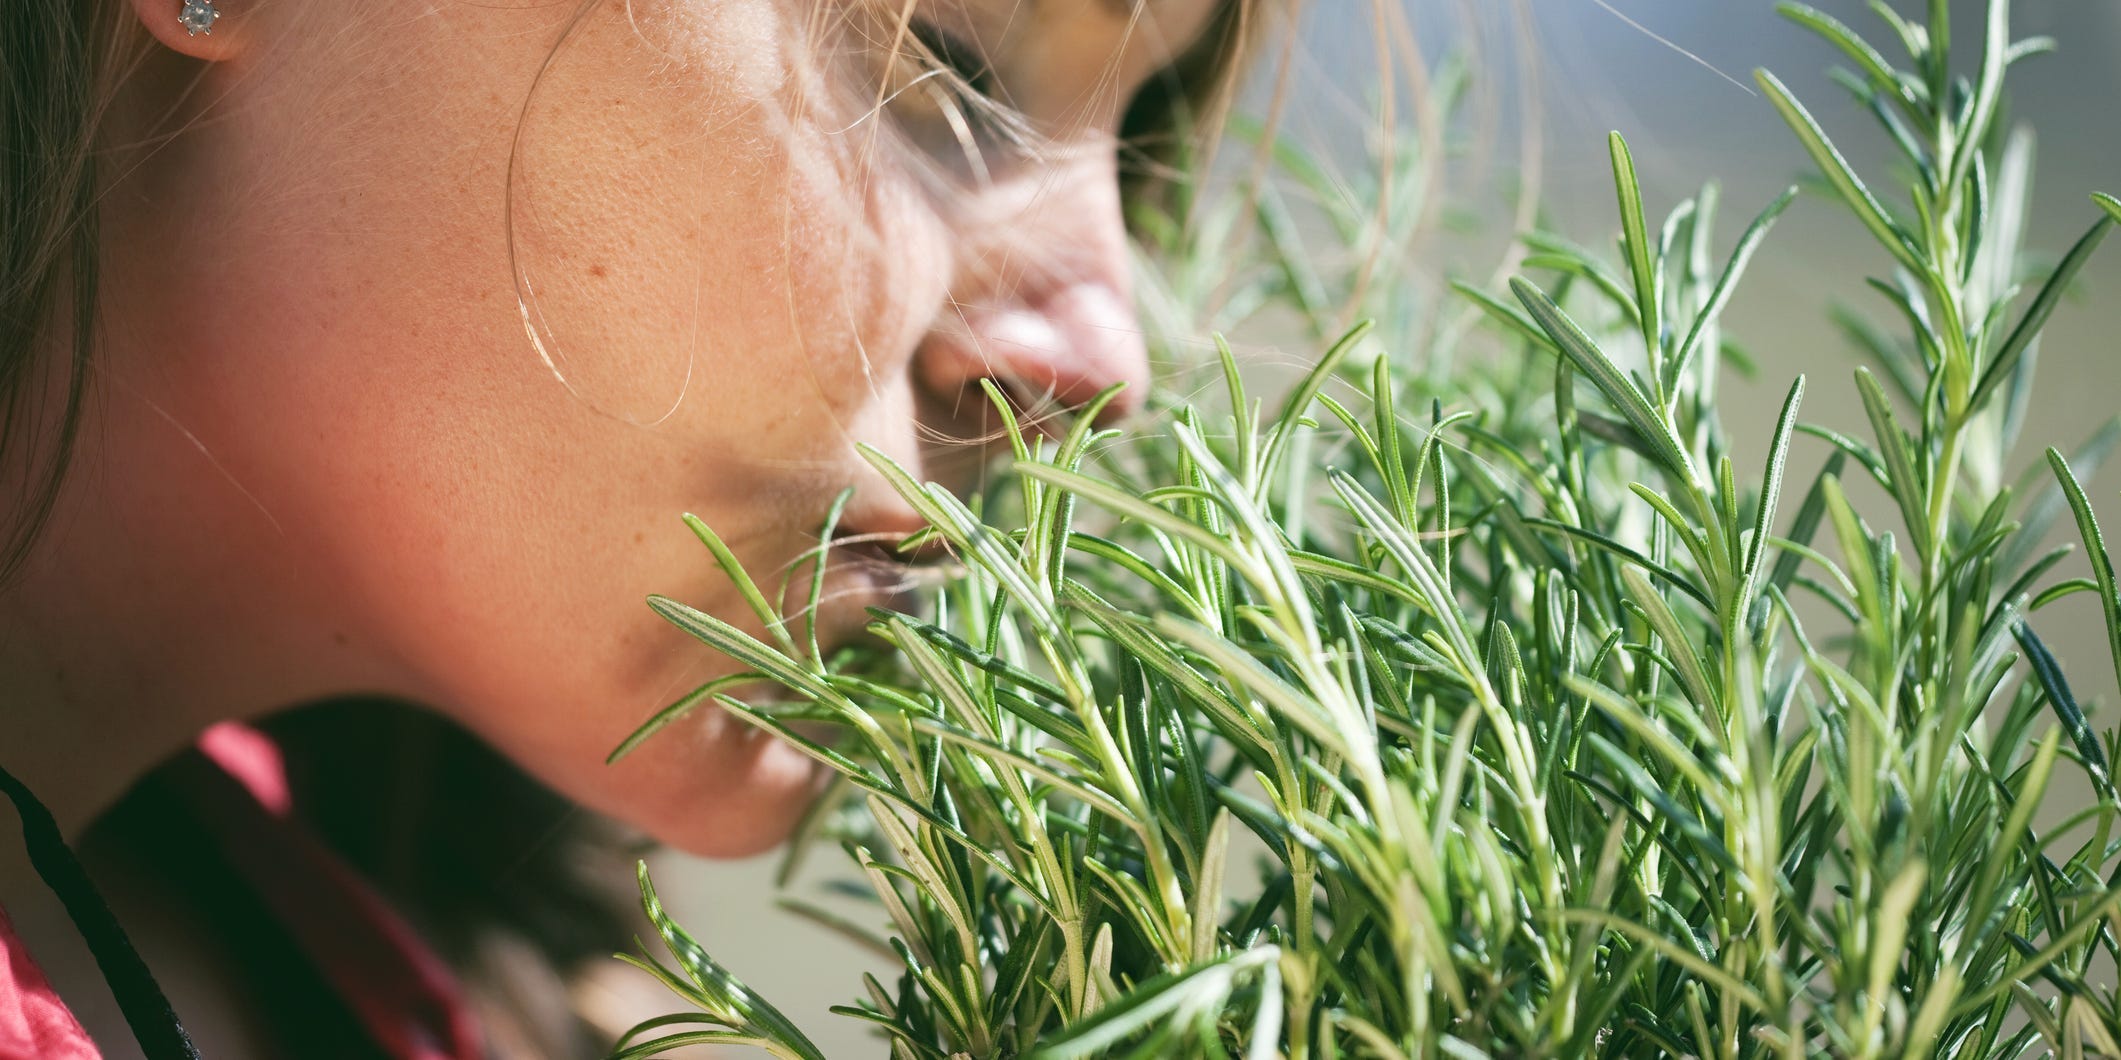 Глотки воздуха нормально дышим живая травинка человек. Запах травы. Человек с травкой. Розмарин. Трава которая пахнет.